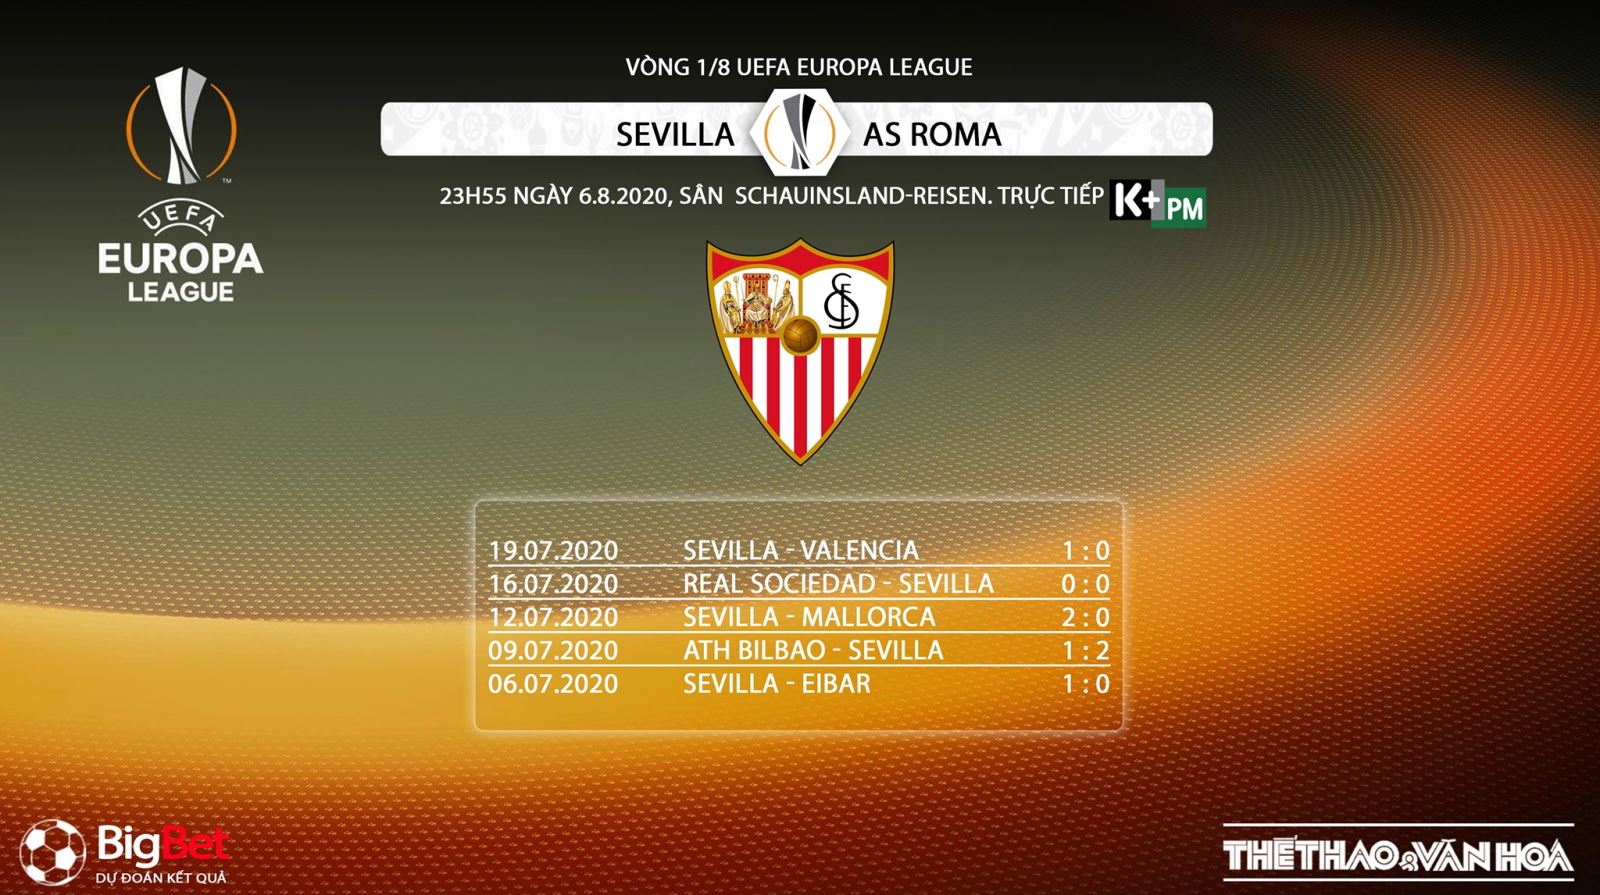 Sevilla vs Roma, nhận định bóng đá Sevilla vs Roma, kèo bóng đá Sevilla vs Roma, kèo bóng đá, nhận định bóng đá, kèo bóng đá, trực tiếp Sevilla vs Roma